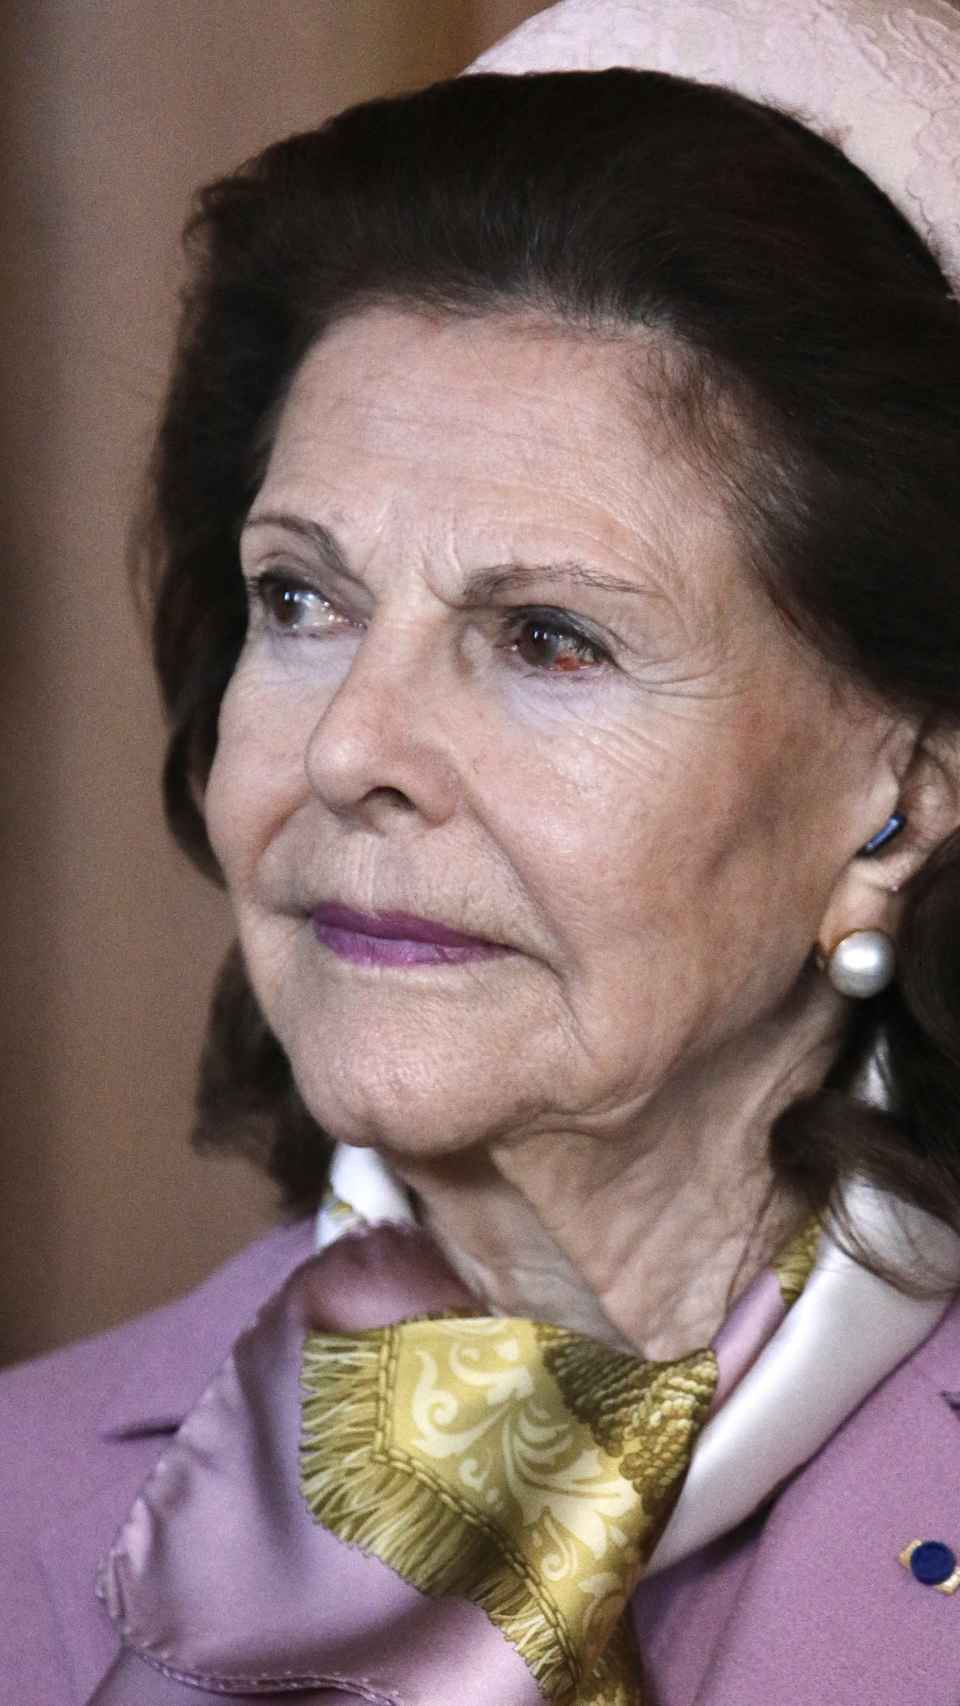 La reina Silvia de Suecia en una fotografía donde se aprecia el derrame.